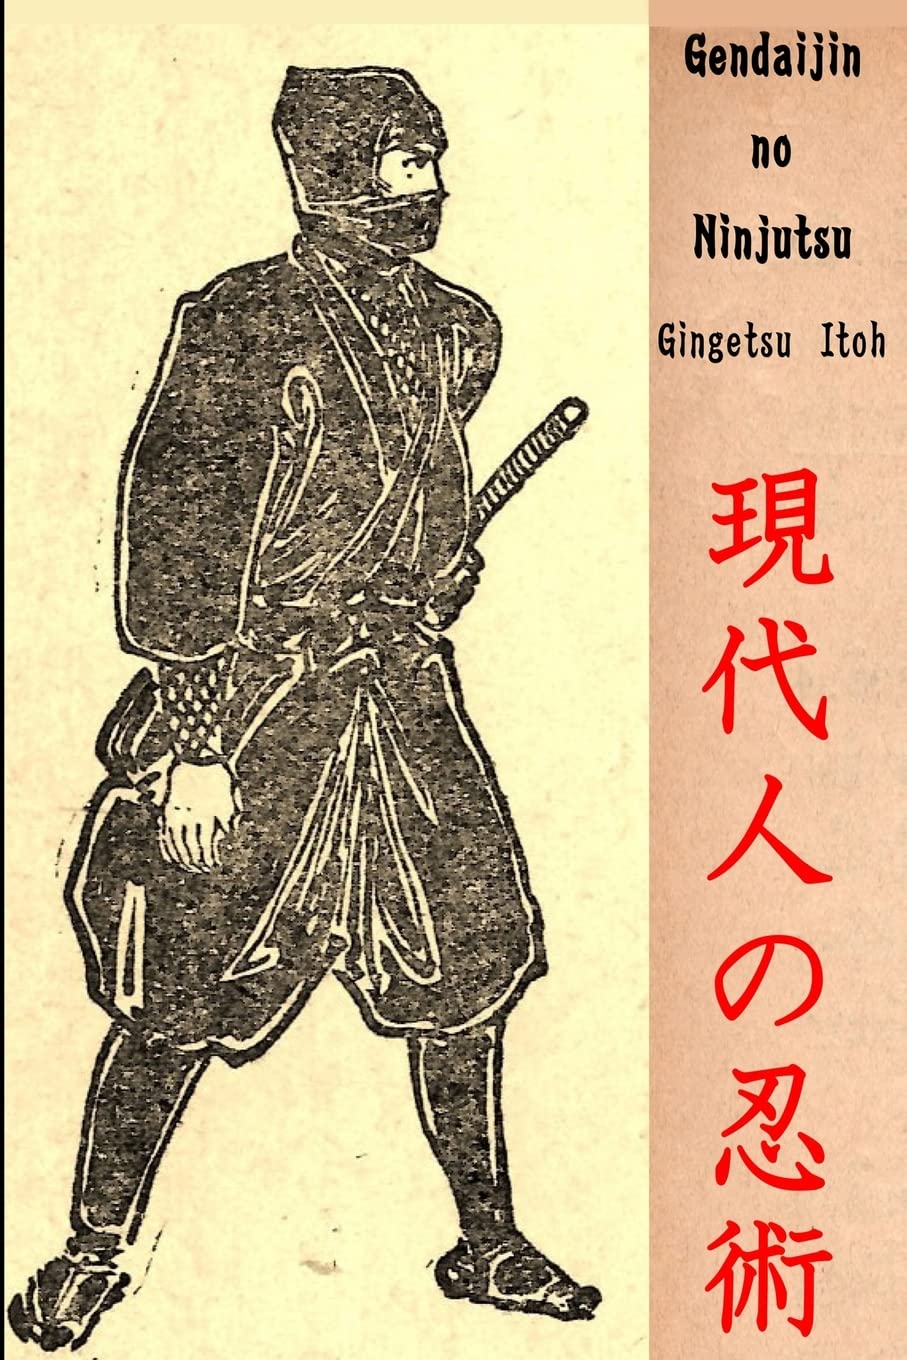 Gendaijin no Ninjutsu Book by Gingetsu Itoh